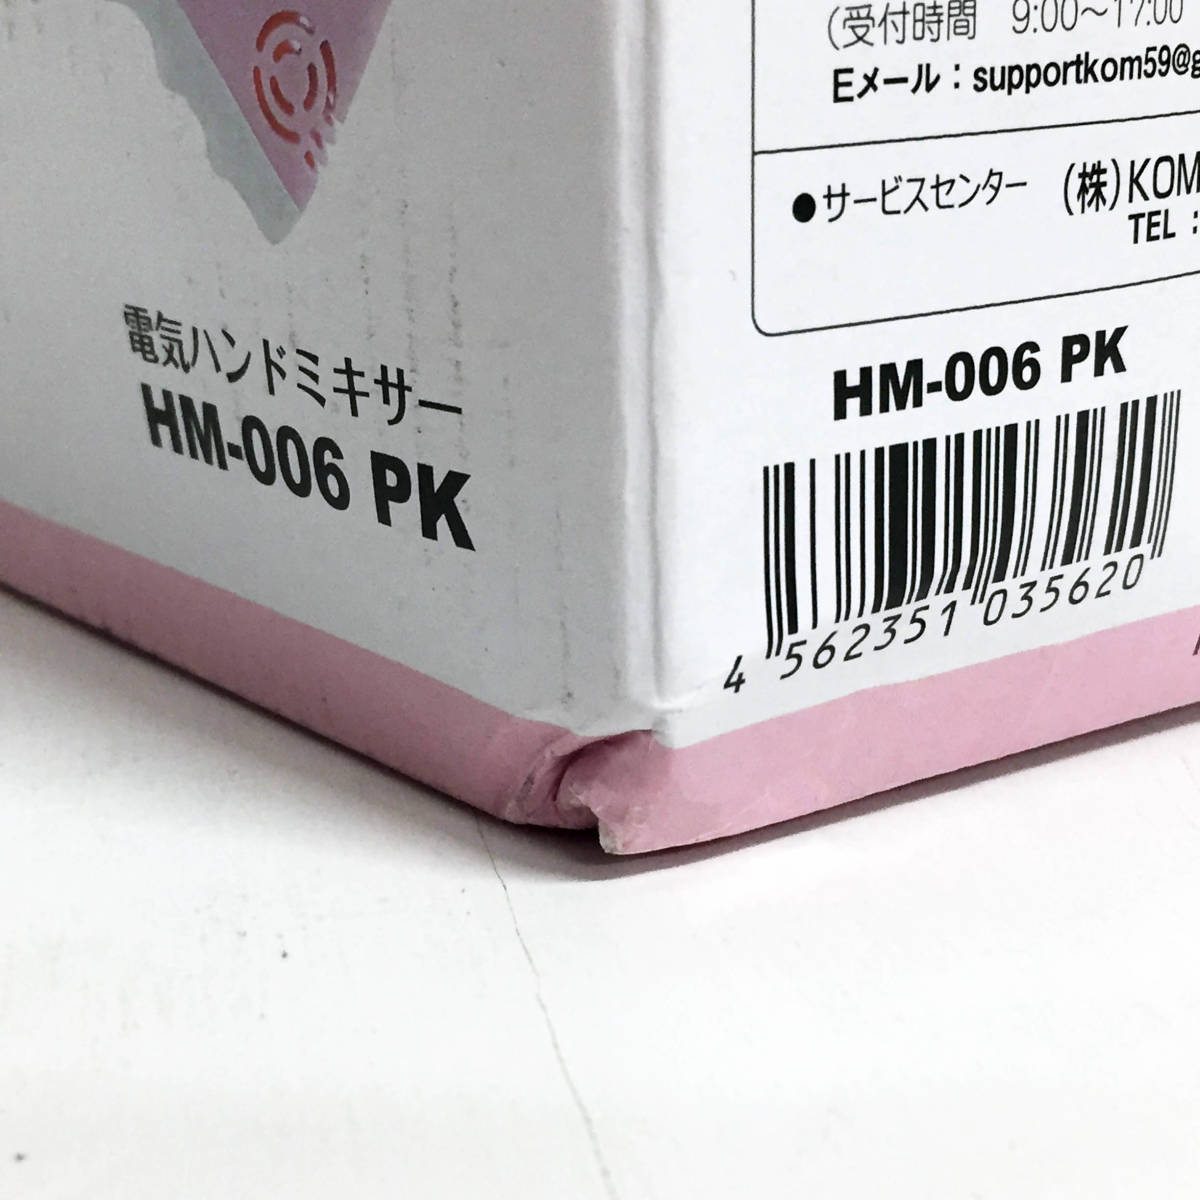 アウトレット☆ハンドミキサー HM-006-PK お菓子 手作り スイーツ コンパクト お洒落 未使用 送料無料